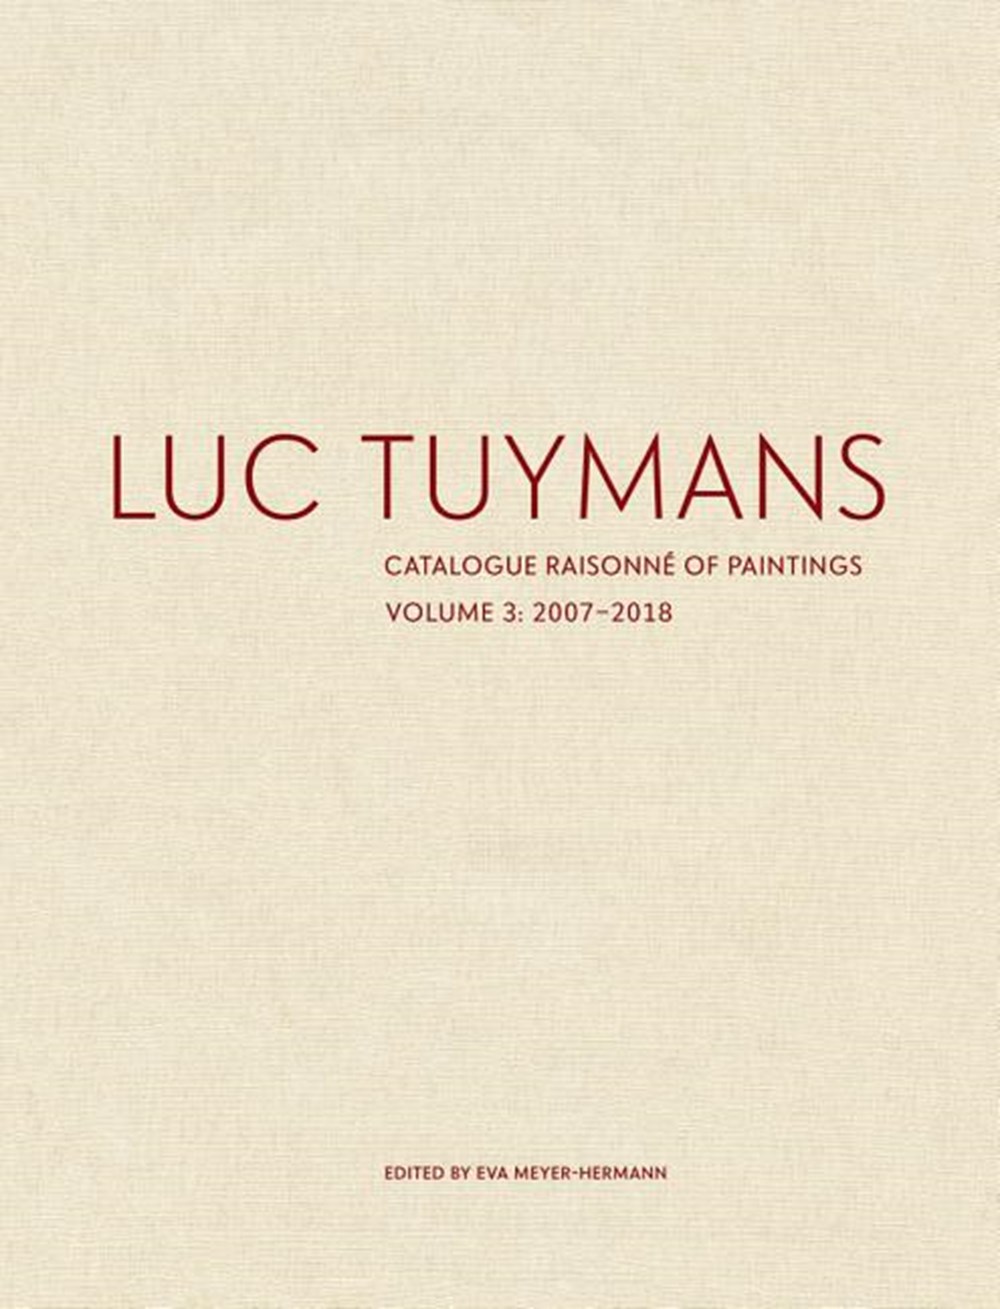 Luc Tuymans: Catalogue Raisonné of Paintings, Volume 3: 2007-2018